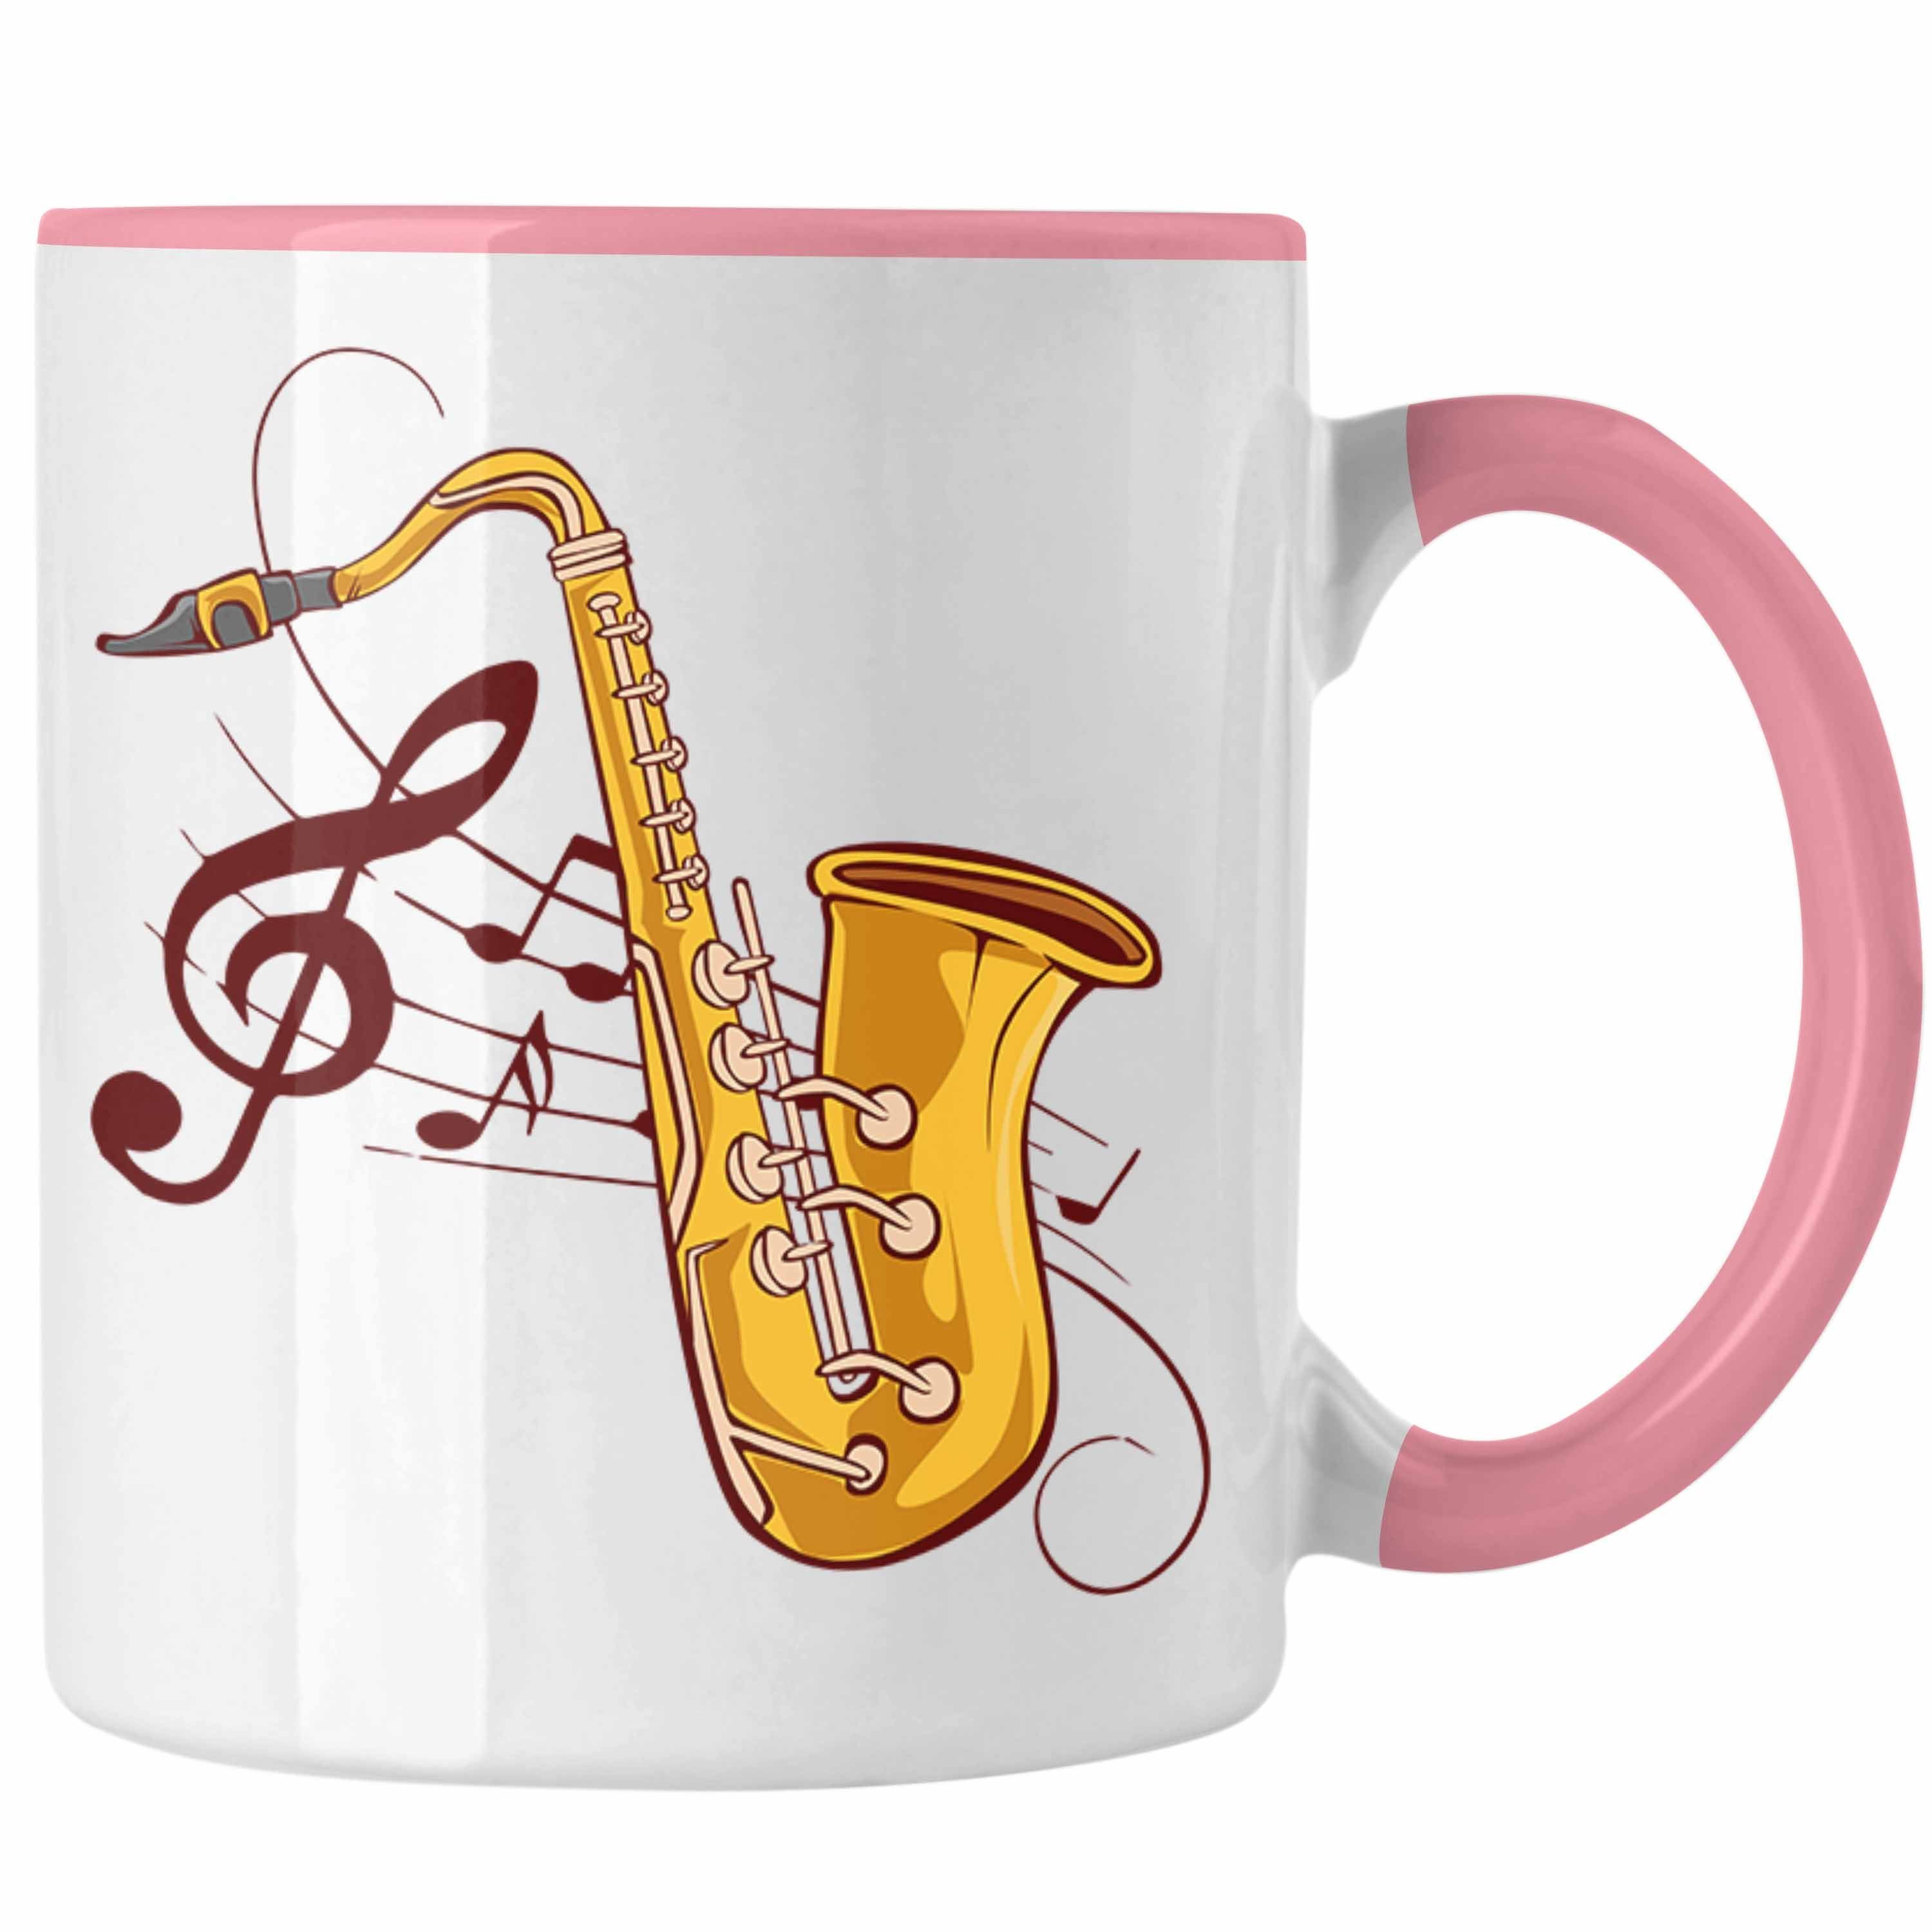 Trendation Lustige Geschenkidee Geschenk Saxofon-Tasse Tasse Rosa Saxofonspieler